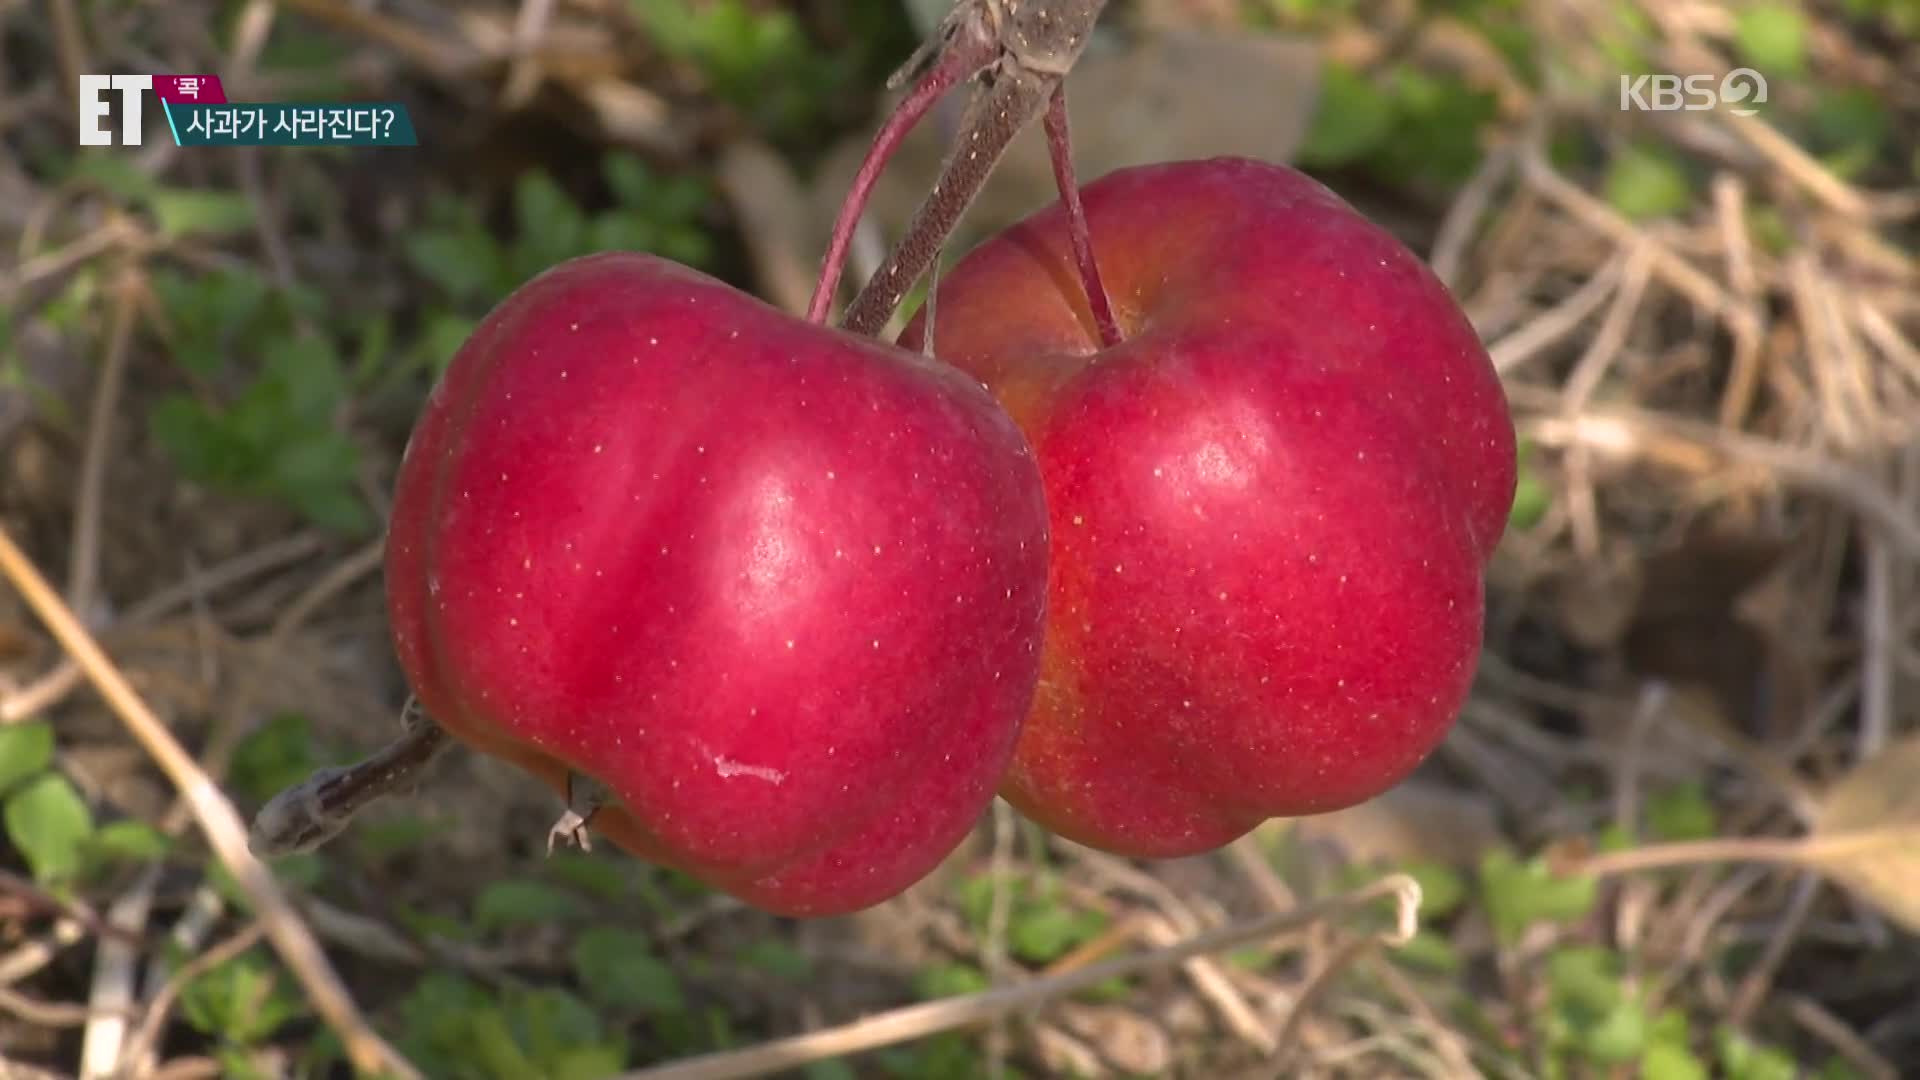 [ET] ‘질투를 부르는 사과’라는데…2090년 되면 못 먹는다고?